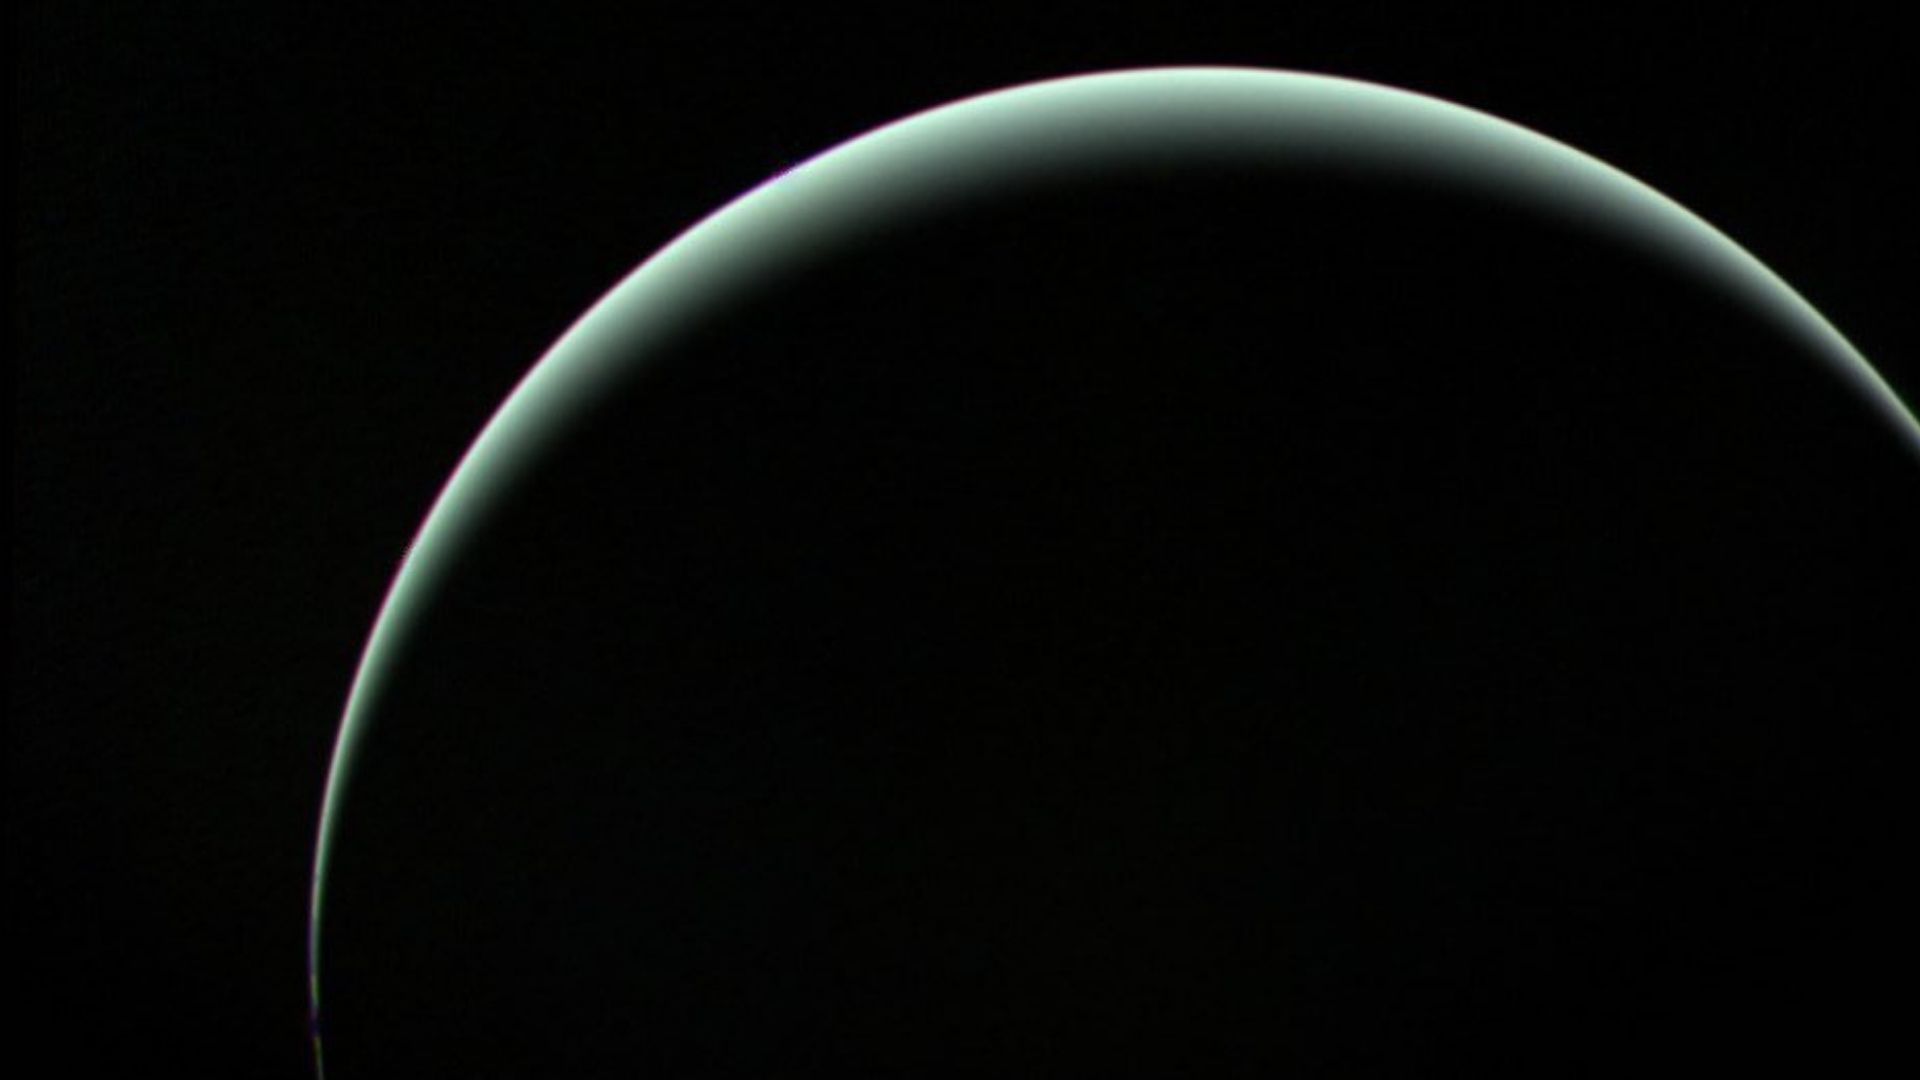 Voyager 2 a pris cette image le 25 janvier 1986, alors qu'elle quittait Uranus pour Neptune.